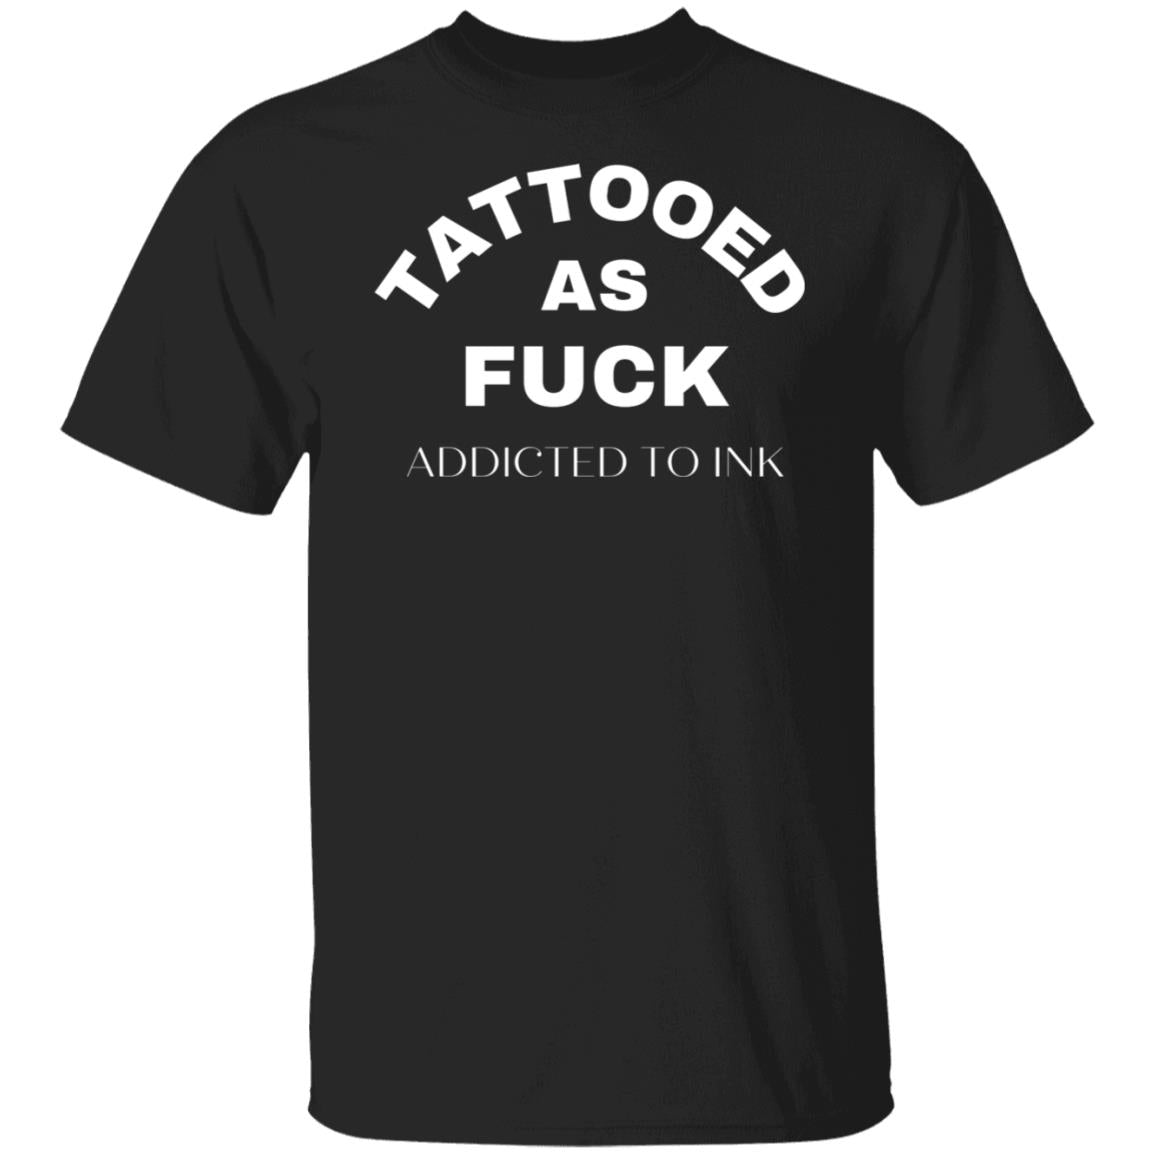 Tattooed As F@CK Funny Tattoo T-Shirt